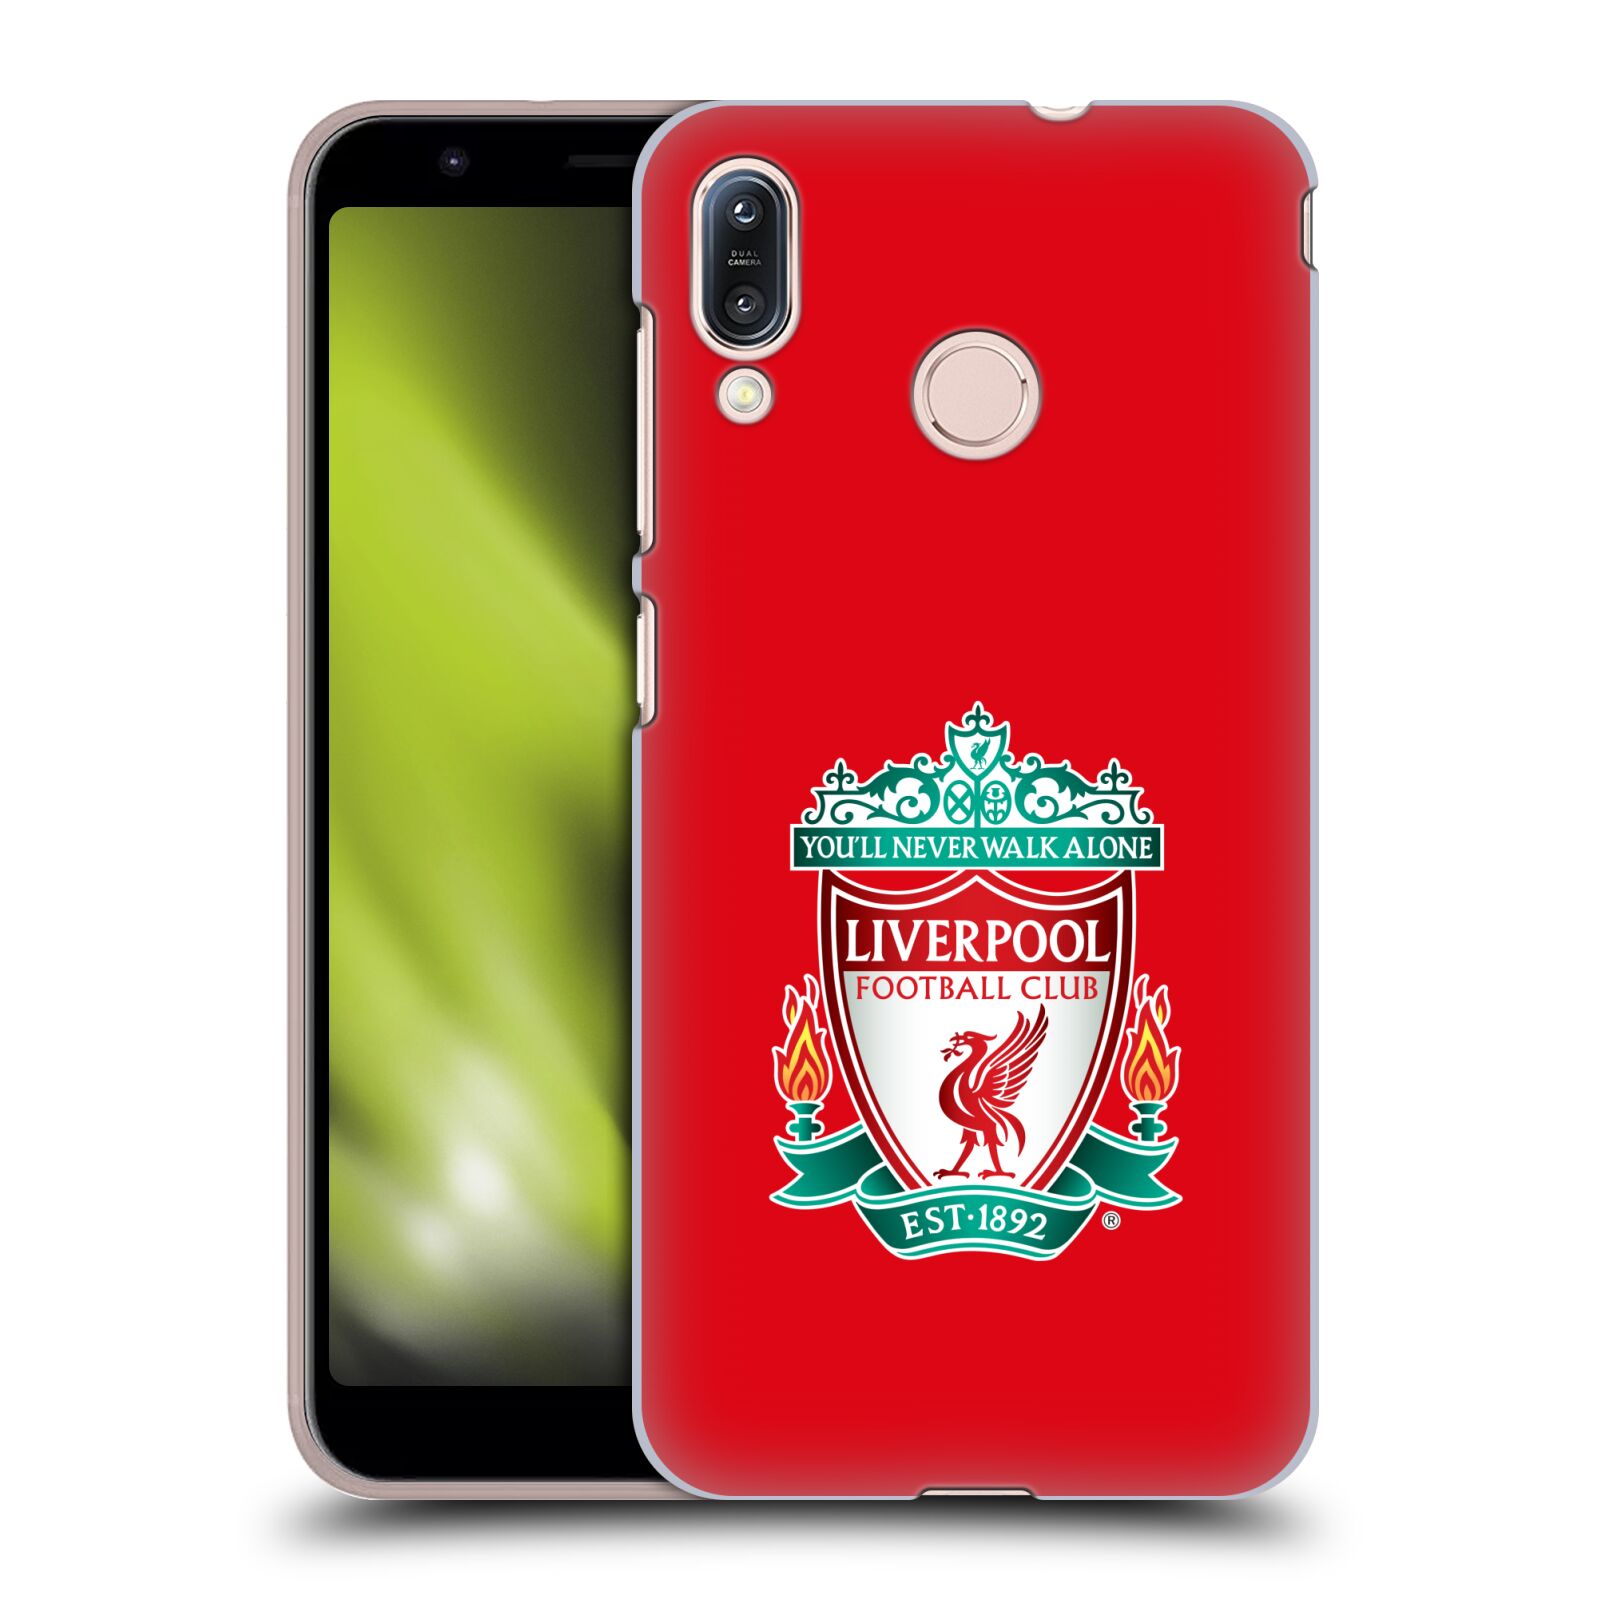 Pouzdro na mobil Asus Zenfone Max M1 (ZB555KL) - HEAD CASE - Fotbalový klub Liverpool barevný znak červené pozadí